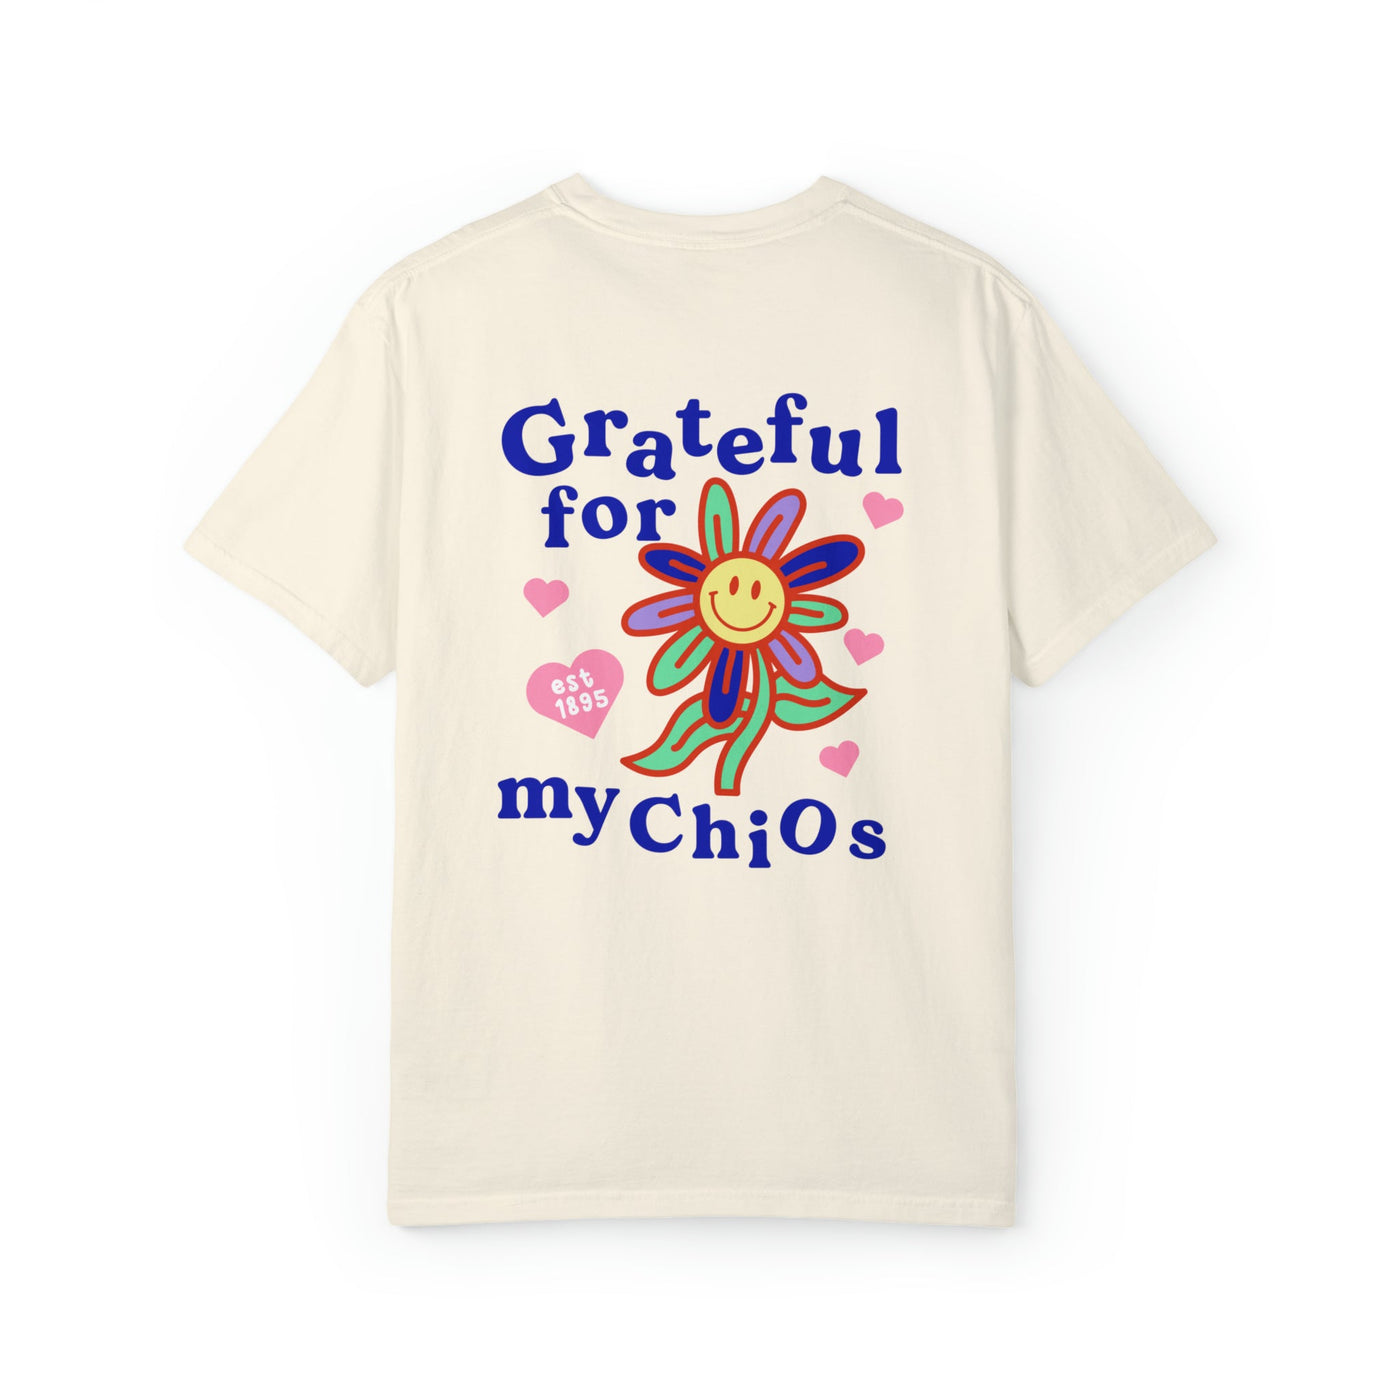 Chi Omega Grateful Flower Sorority T-shirt